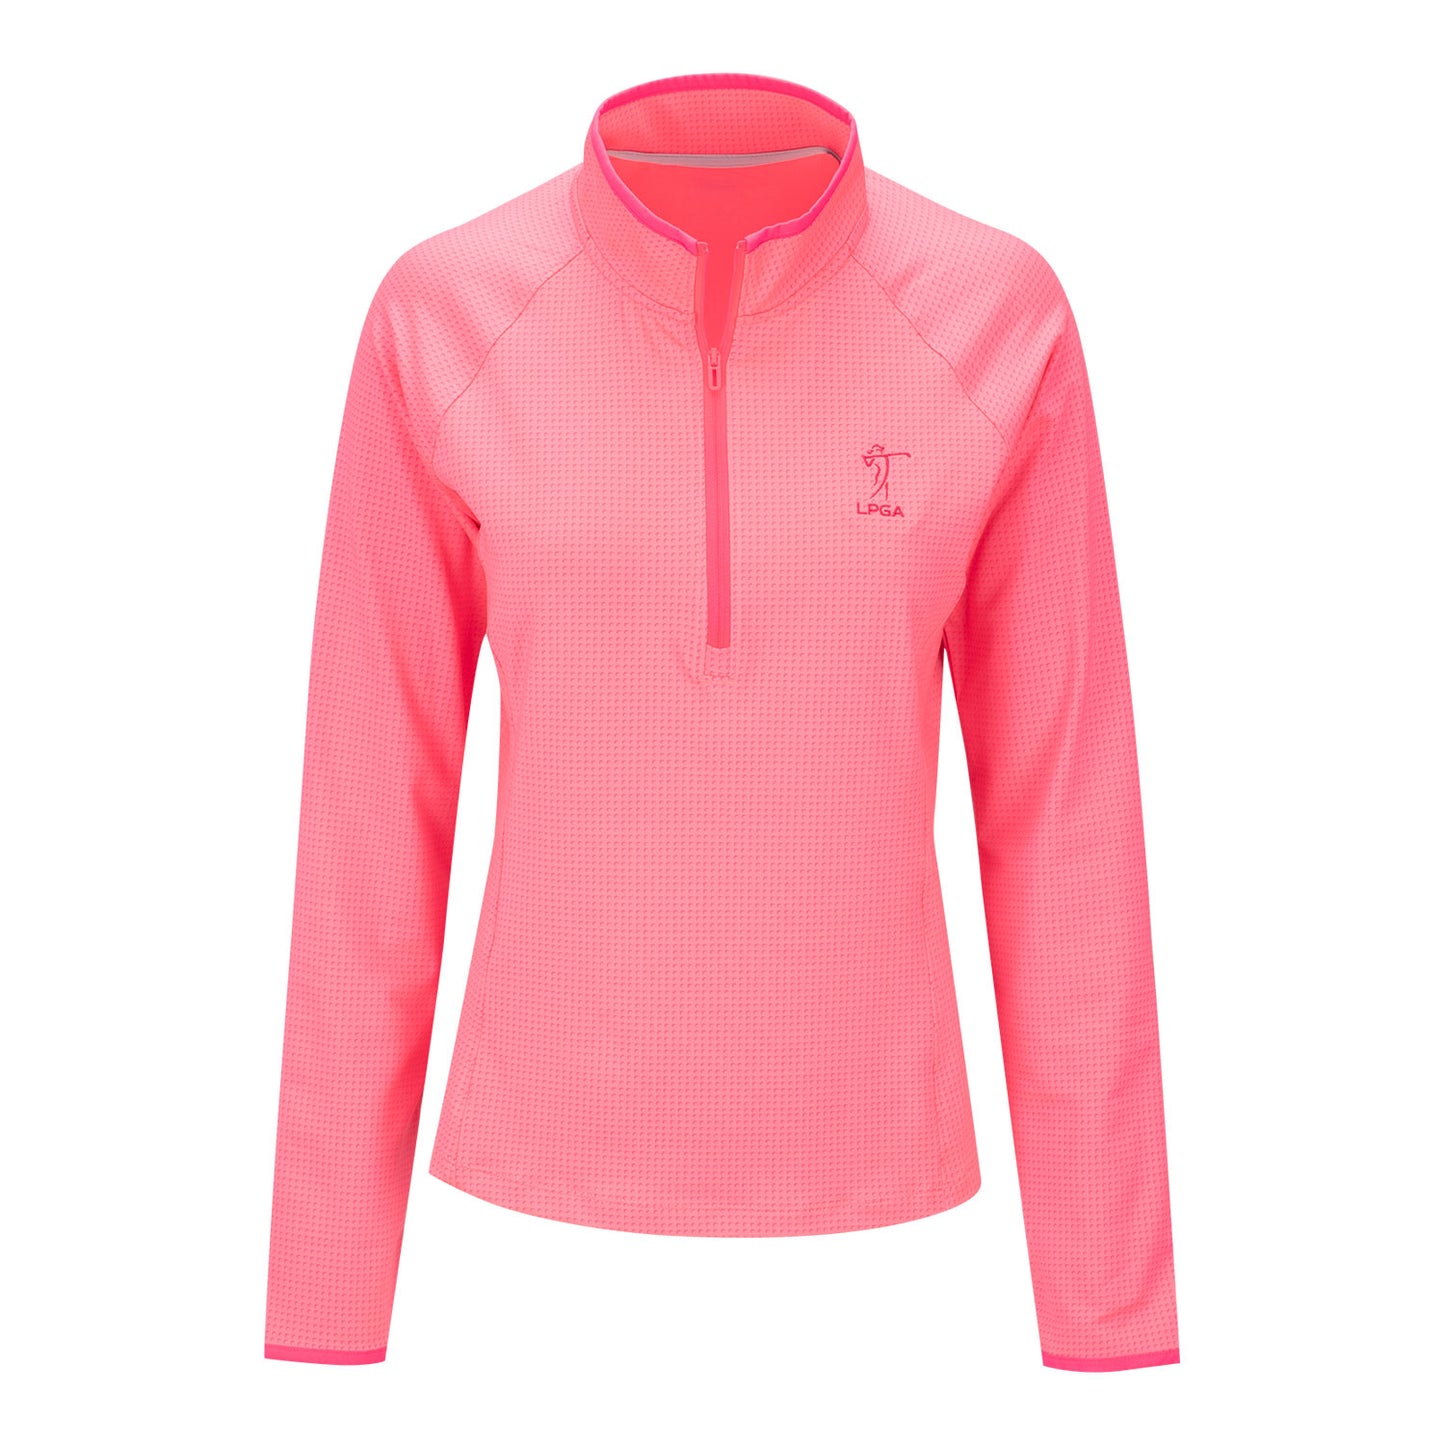 Under Armour LPGA Women's Half Moons Quarter Zip in Pink - Front View